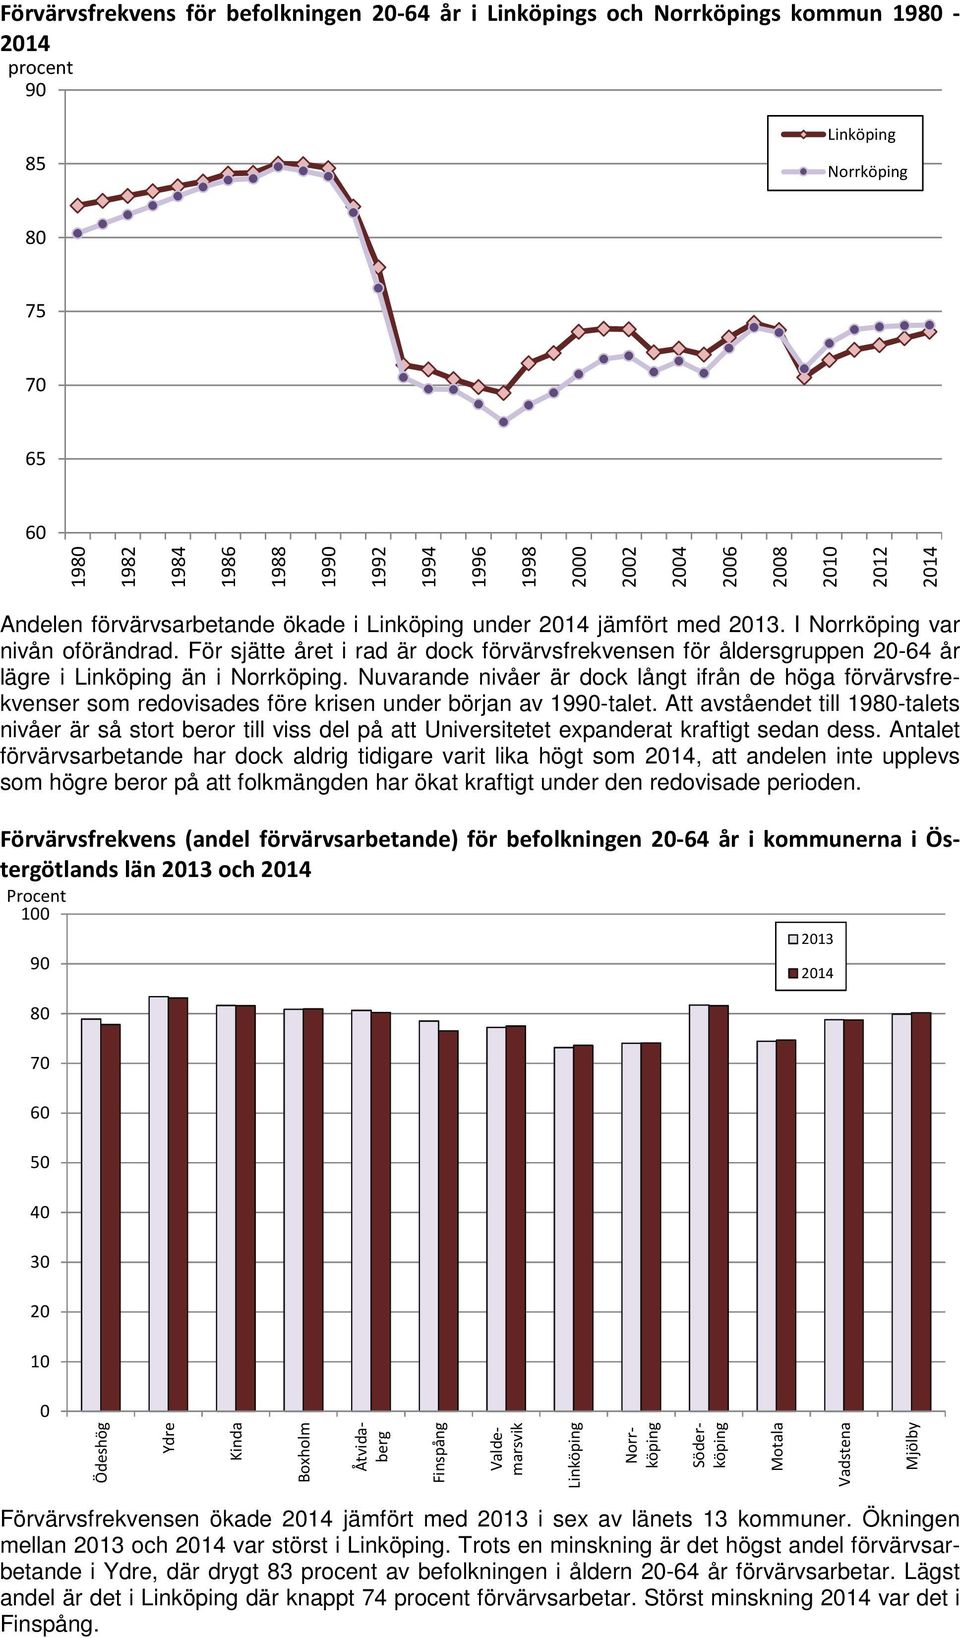 För sjätte året i rad är dock förvärvsfrekvensen för åldersgruppen 2-64 år lägre i Linköping än i Norrköping.